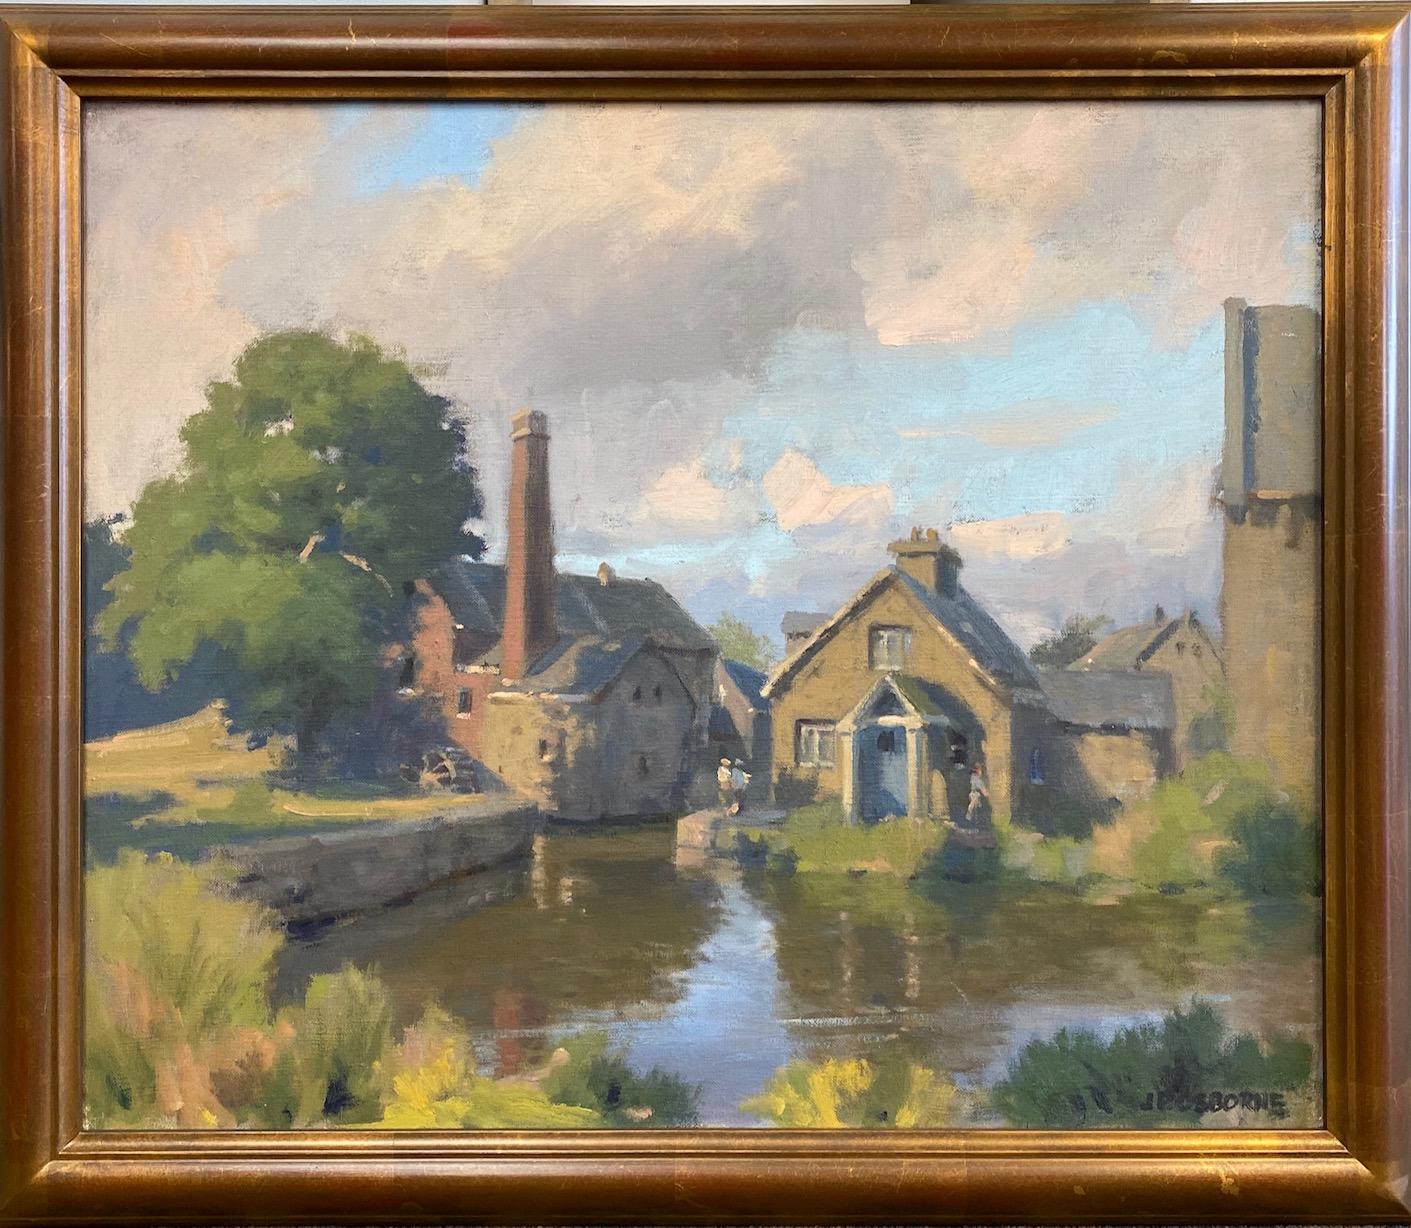 John Phillip Osborne Figurative Painting – The Mill, First Slaughter, originelle impressionistische englische Landschaft